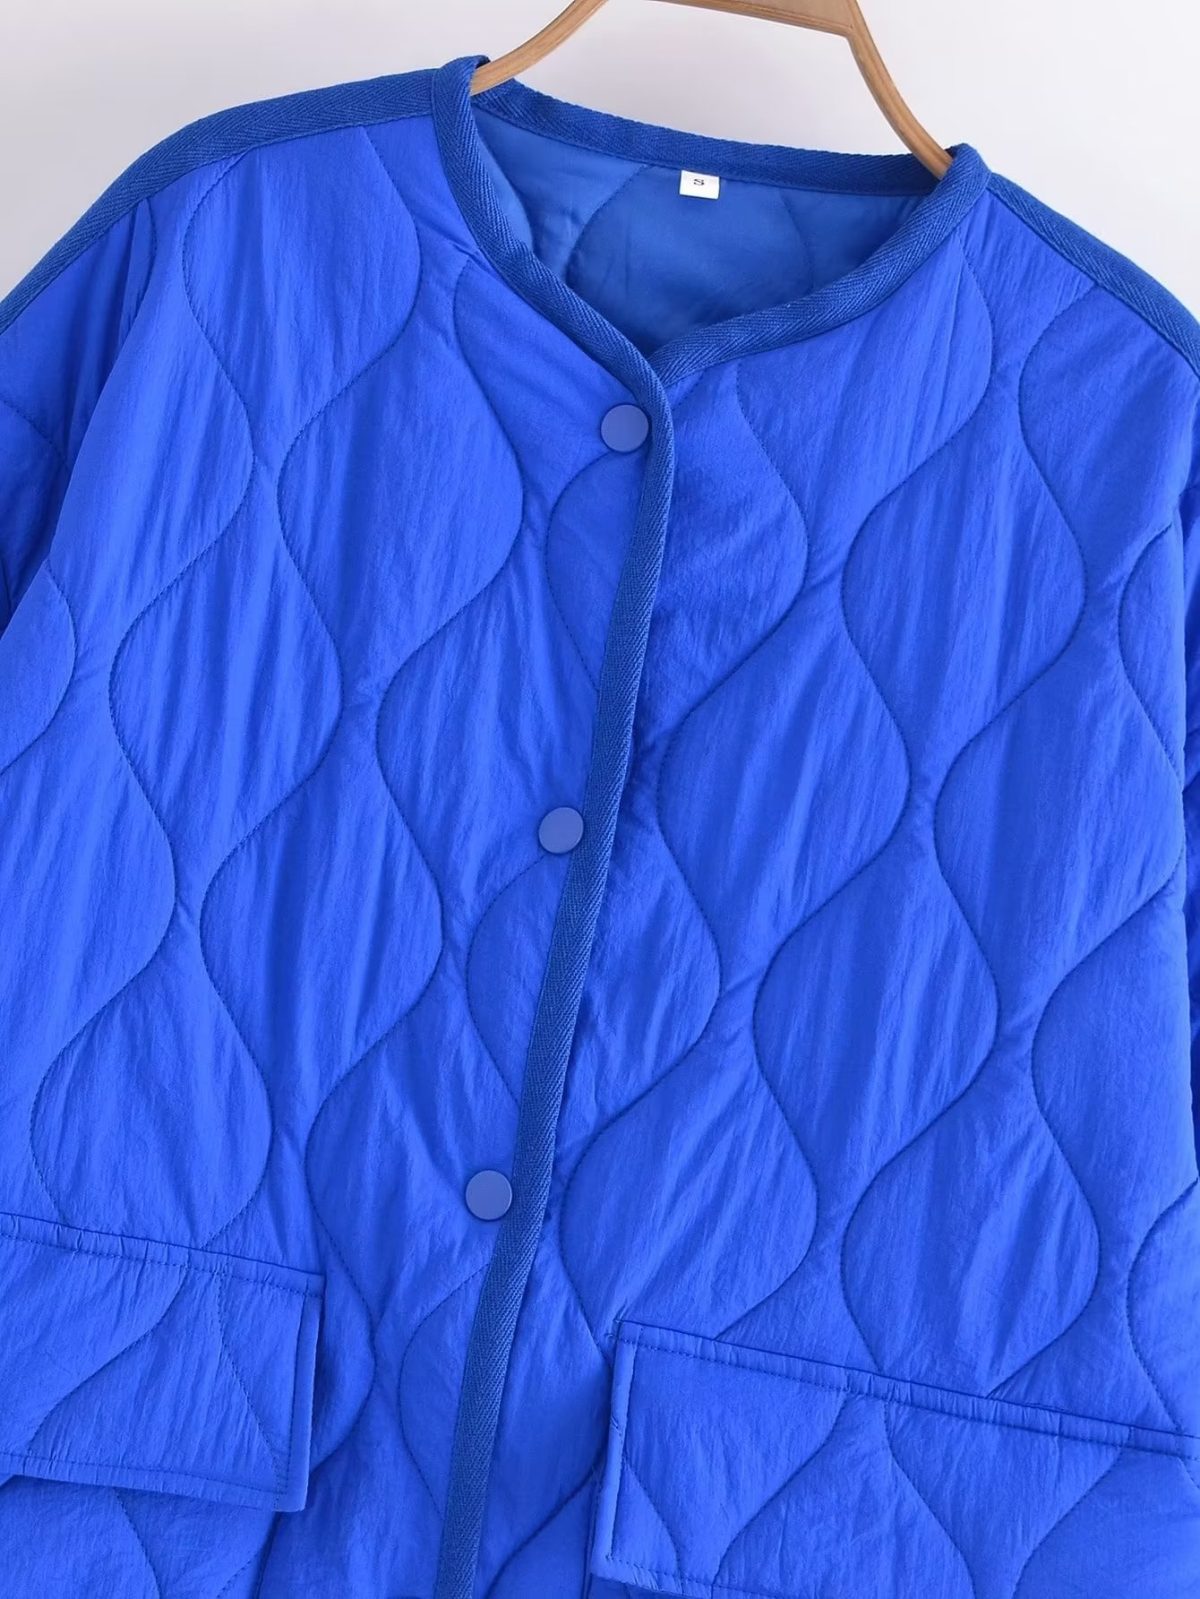 Autumn Winter Retro Casual Loose Slimming Cotton Coat - Coats & Jackets - Uniqistic.com